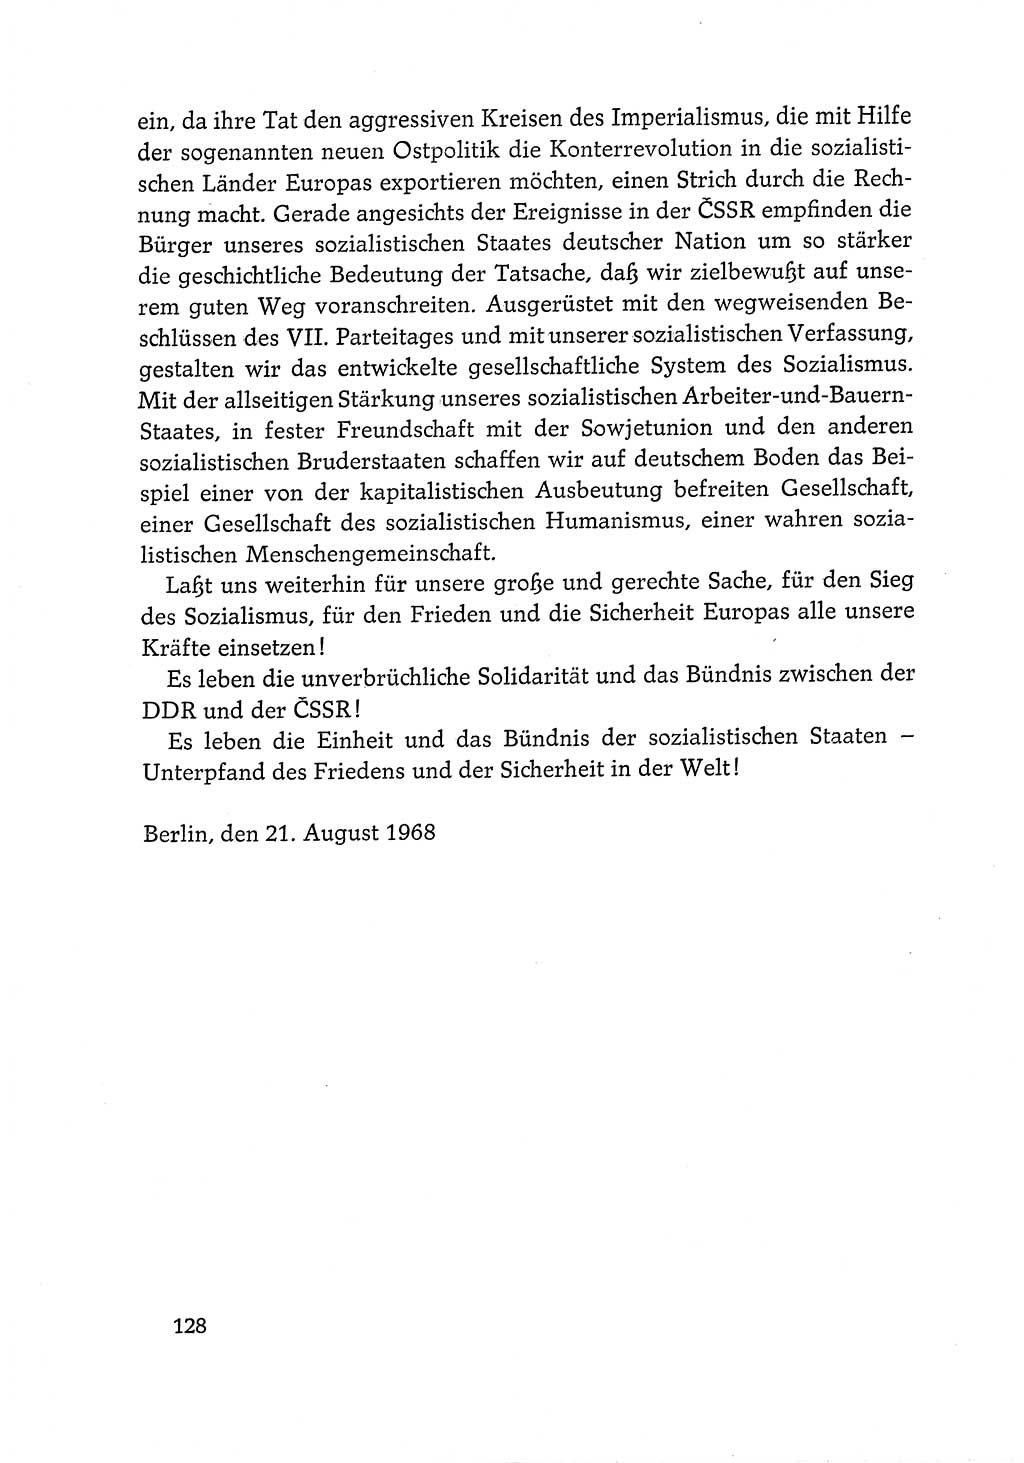 Dokumente der Sozialistischen Einheitspartei Deutschlands (SED) [Deutsche Demokratische Republik (DDR)] 1968-1969, Seite 128 (Dok. SED DDR 1968-1969, S. 128)